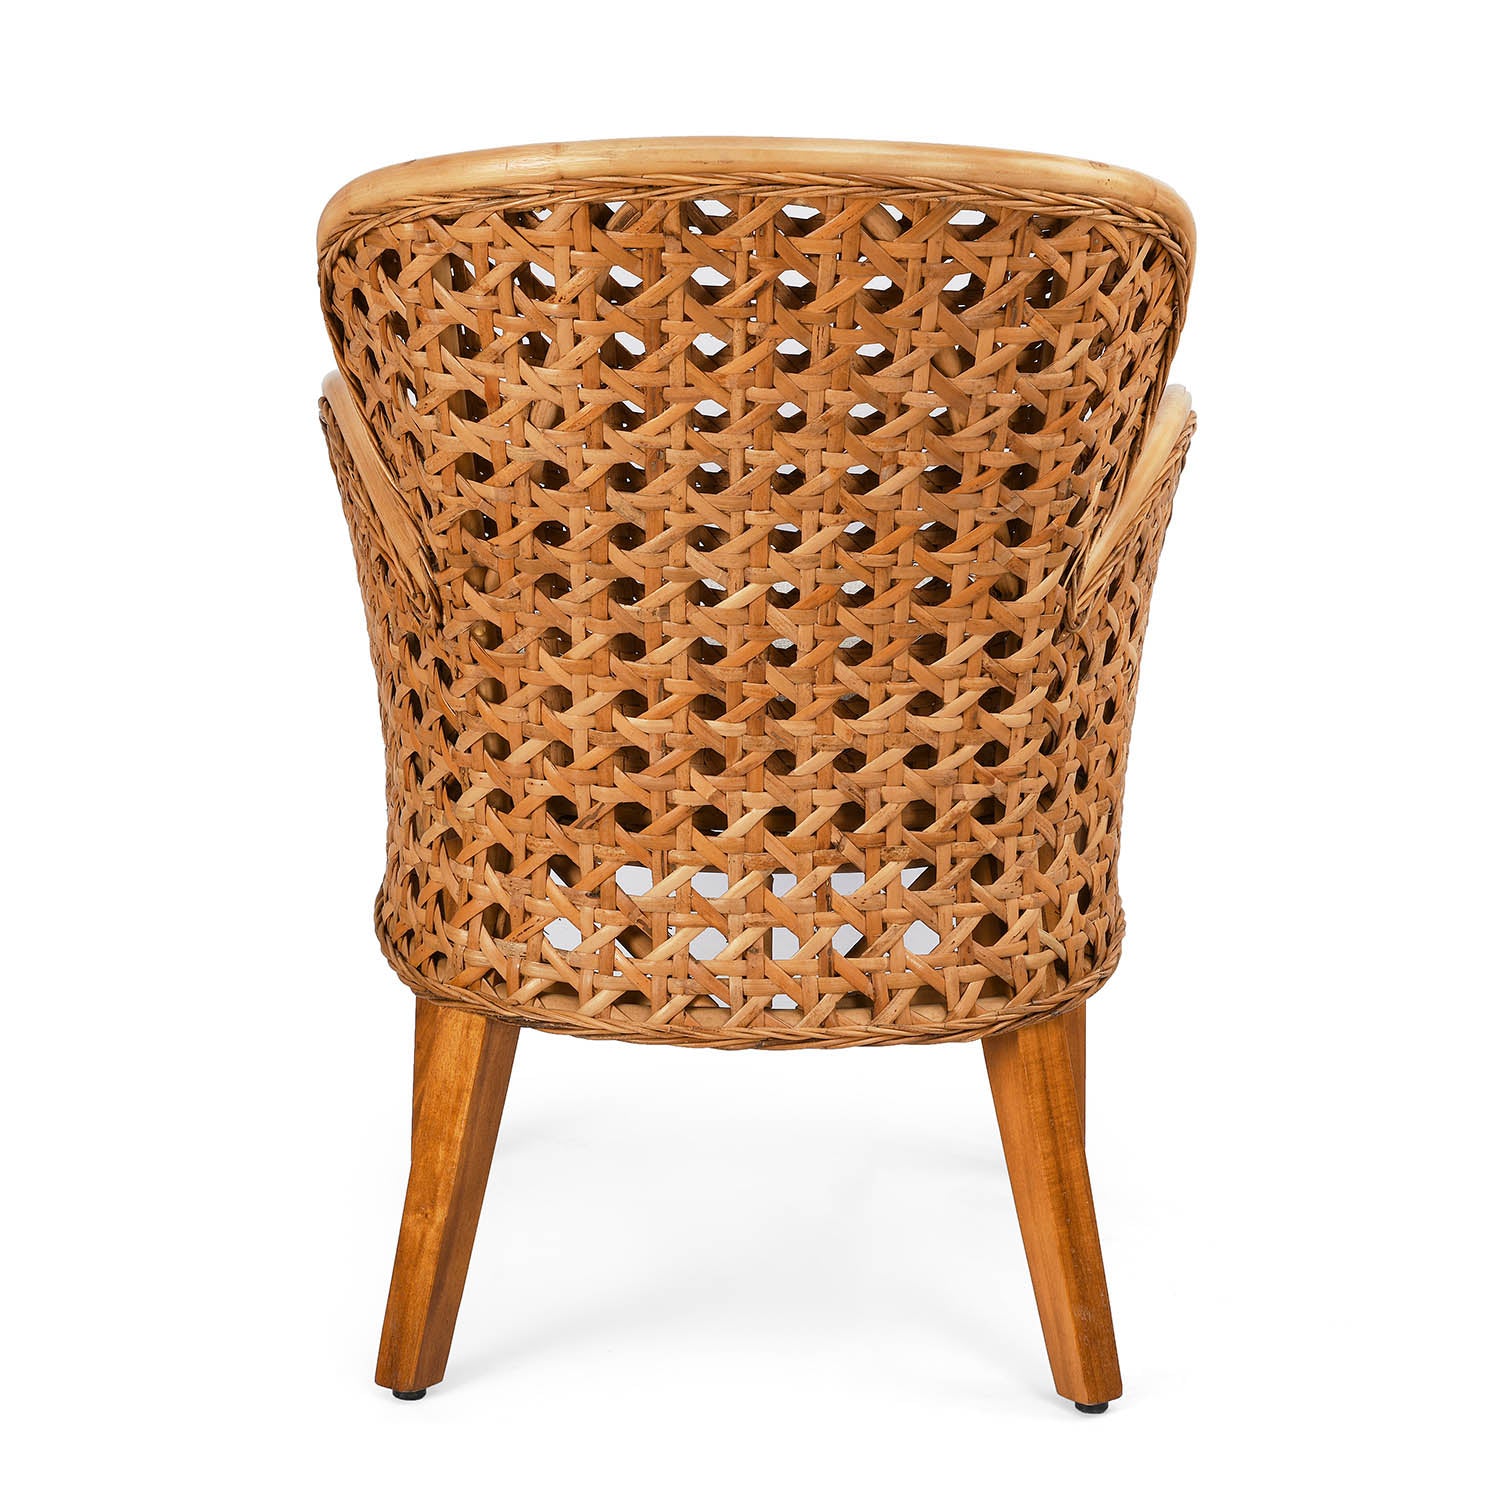 Linford Arm Chair (Natural)